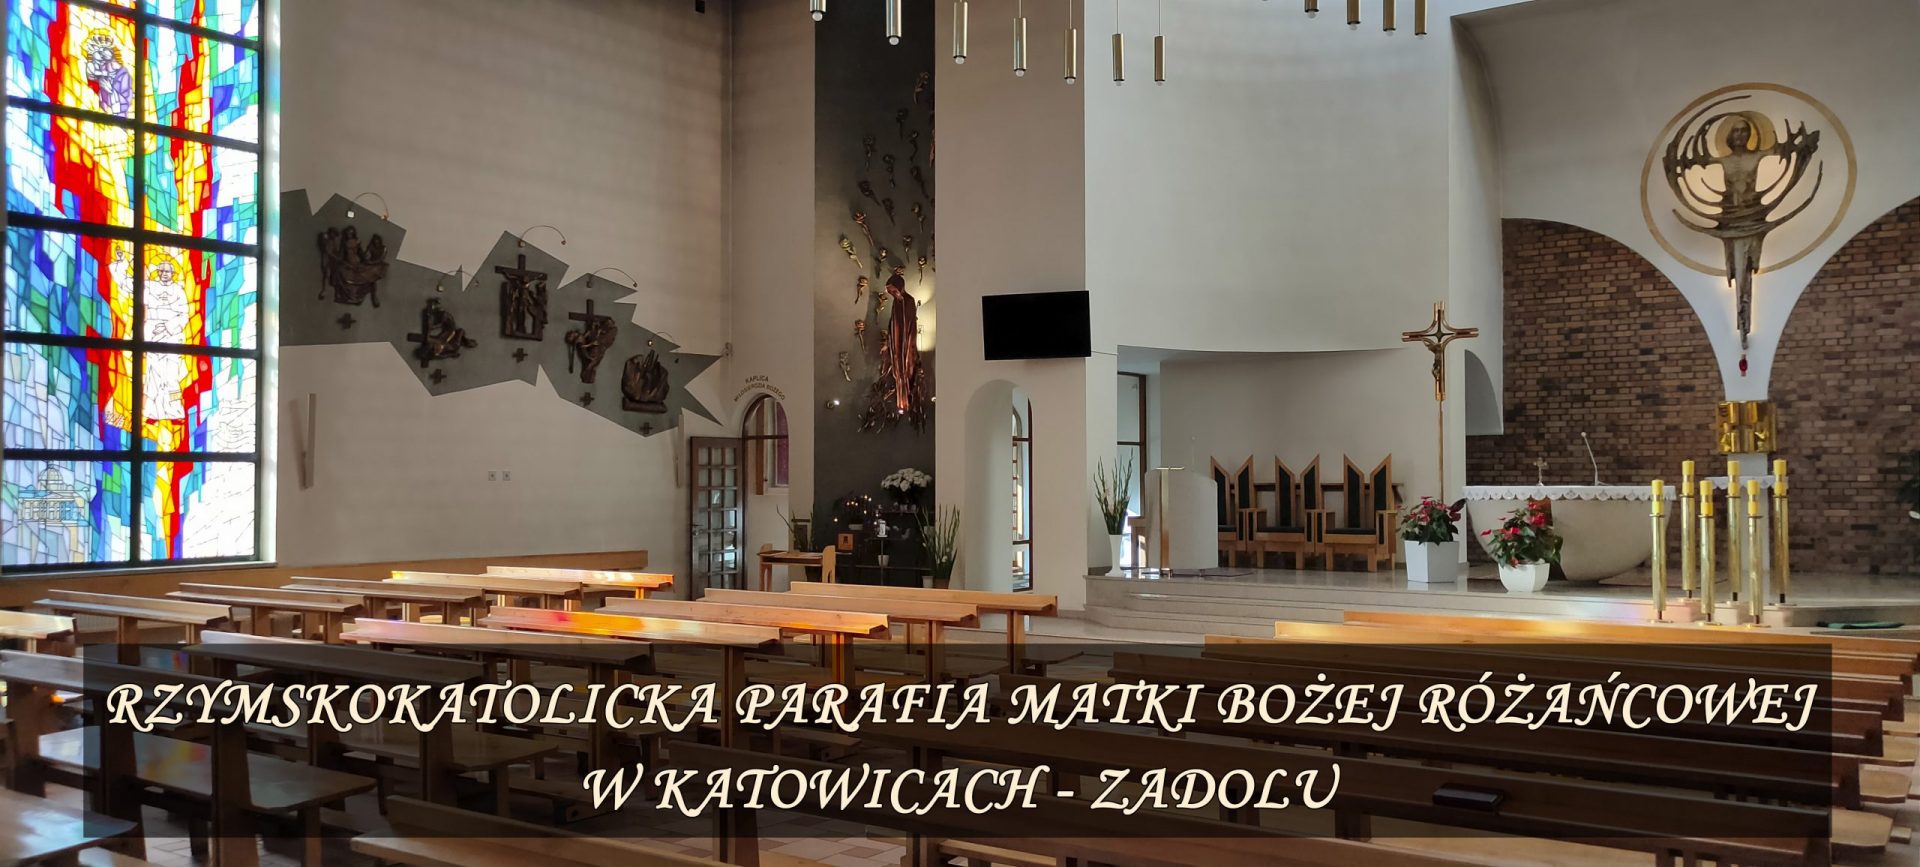 Parafia Matki Bożej Różańcowej w Katowicach - Zadolu